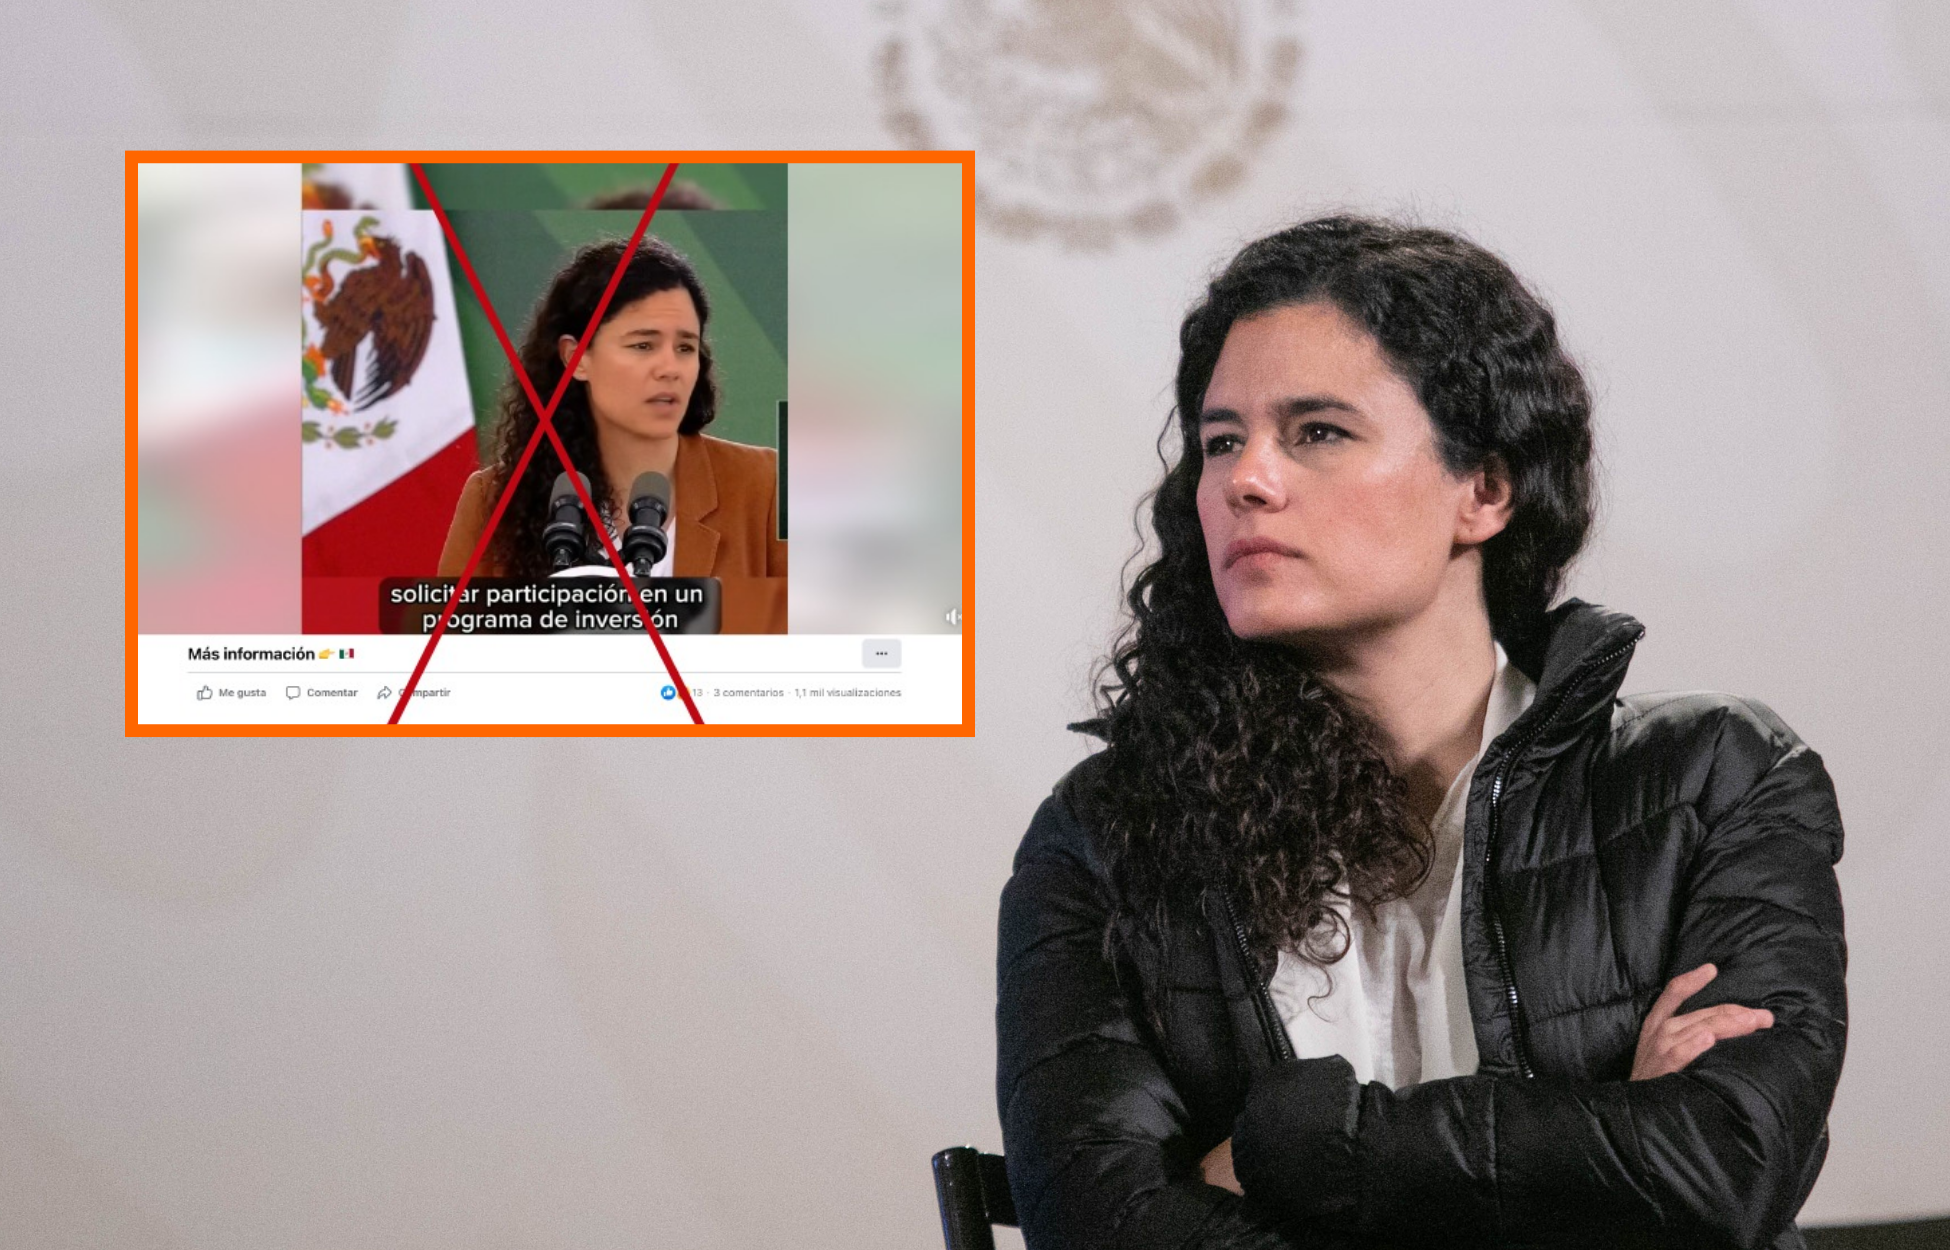 ¡Que no te engañen! Luisa María Alcalde alerta sobre video manipulado con IA que invita a programa de inversión. Noticias en tiempo real